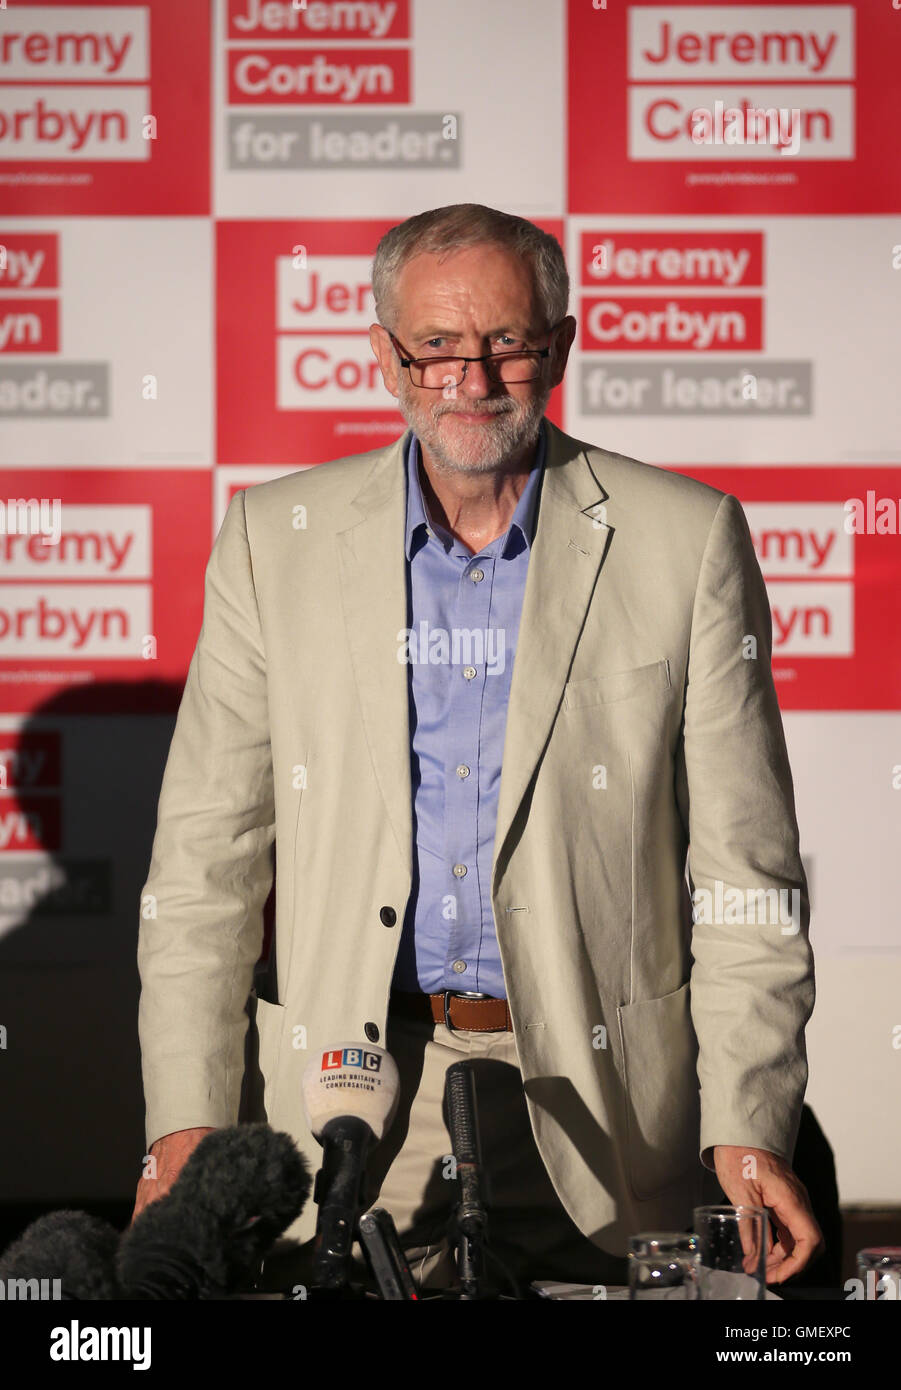 Líder laborista Jeremy Corbyn durante una sesión de preguntas y respuestas en una manifestación celebrada en Glasgow, el Hotel Crowne Plaza, donde el impacto de un led Corbyn Gobierno Laborista en Escocia fue discutido. Foto de stock